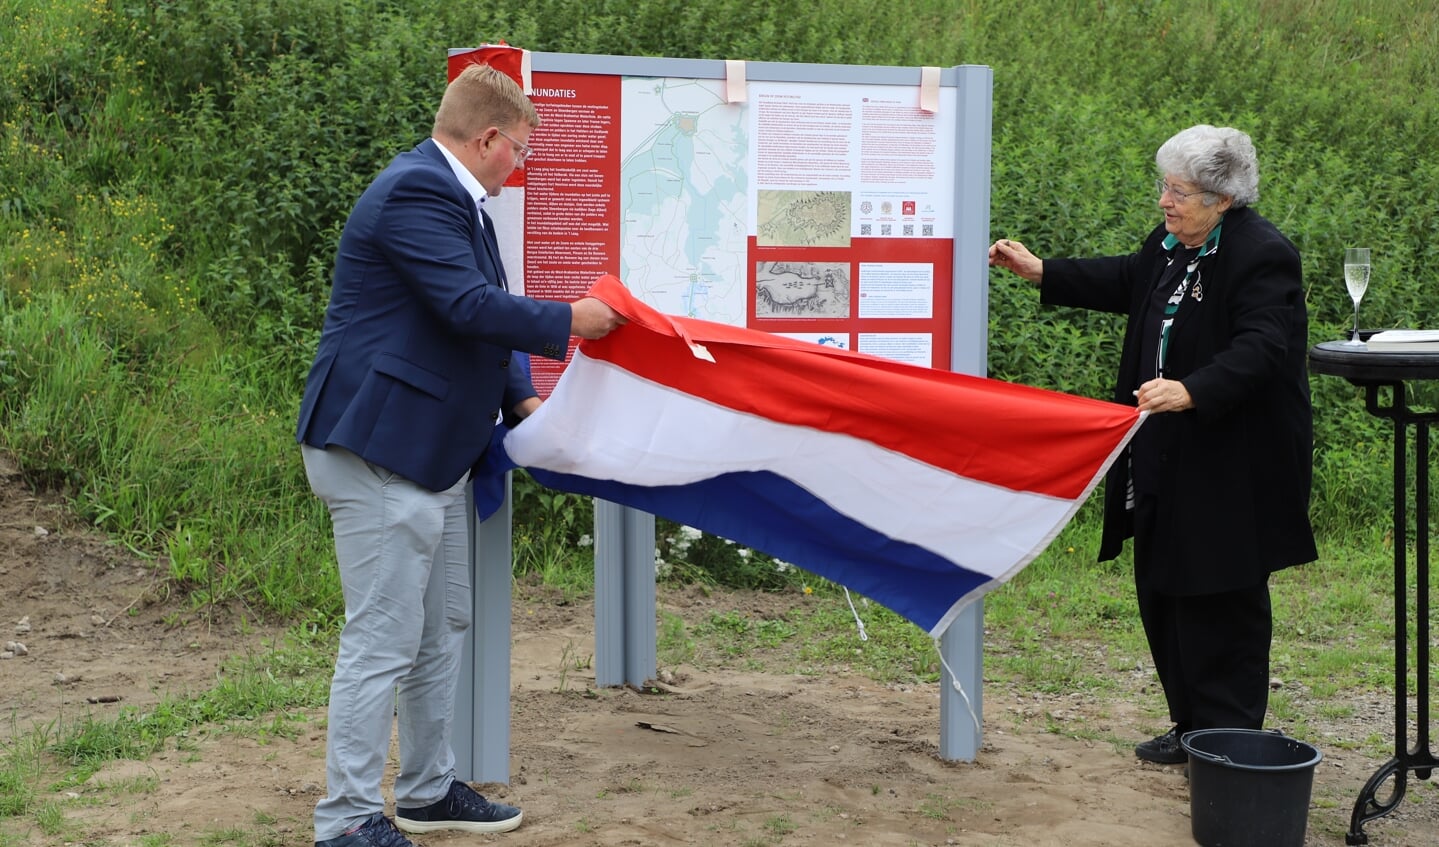 Onthulling informatiepanelen Fort de Roovere door Ans v.d. Berg en Patrick van der Velden.